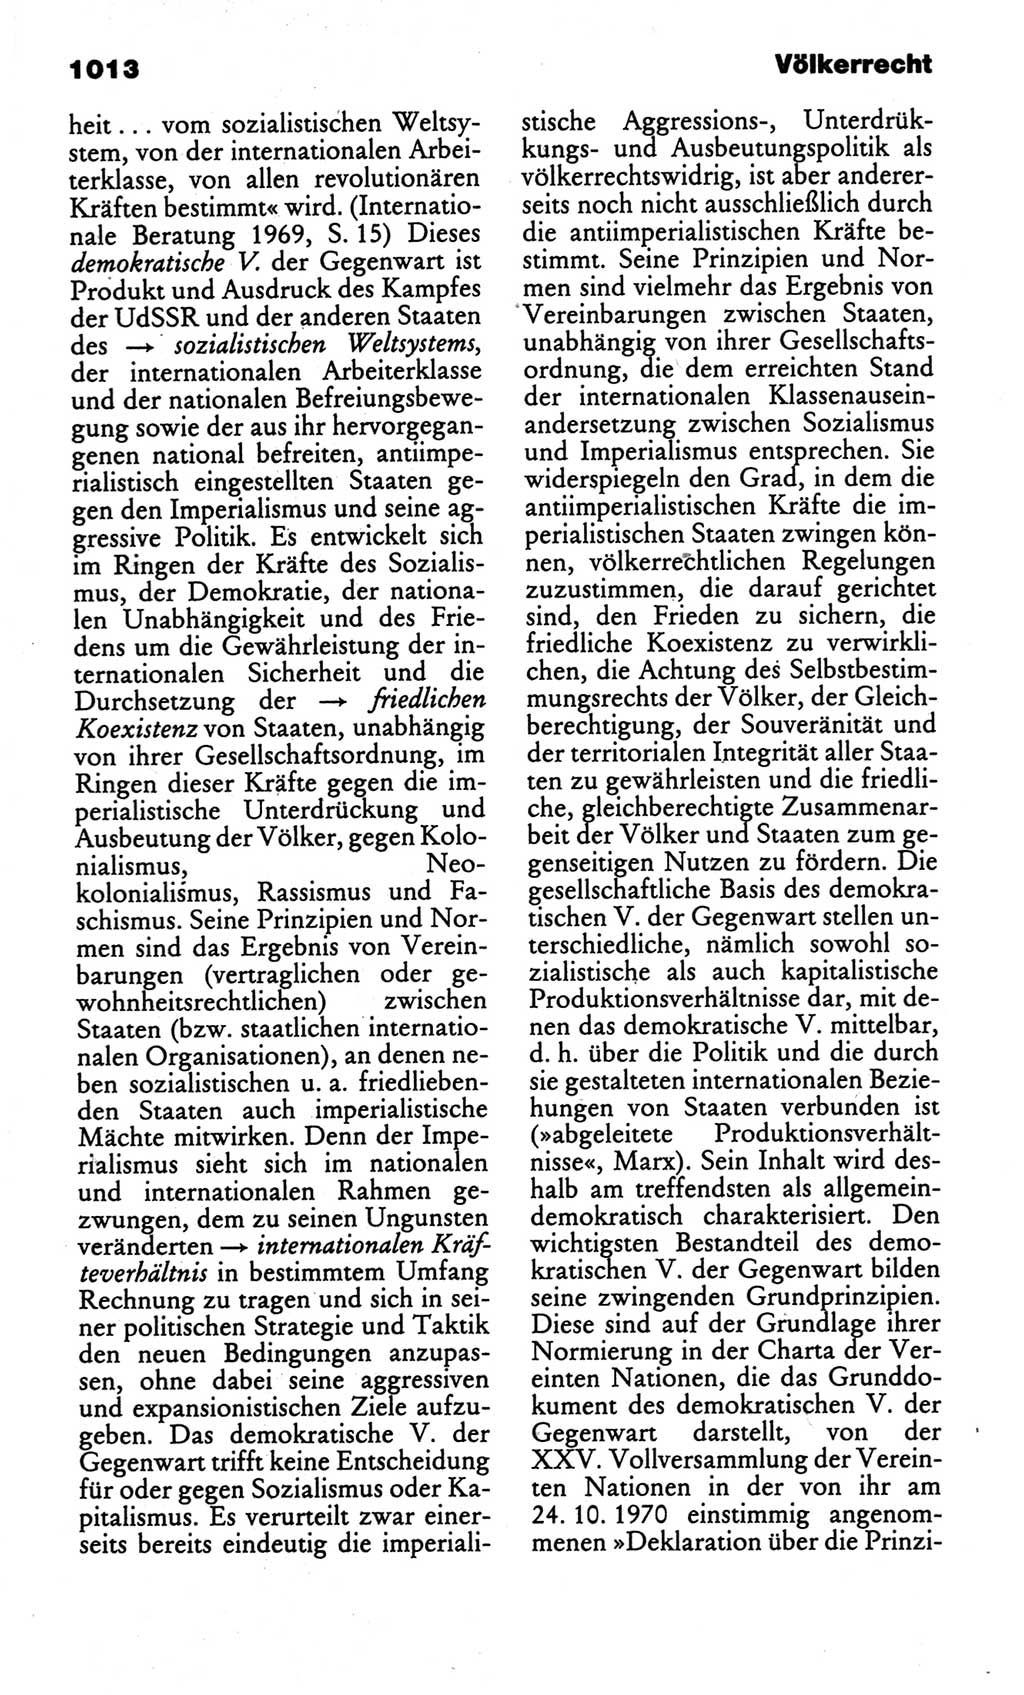 Kleines politisches Wörterbuch [Deutsche Demokratische Republik (DDR)] 1986, Seite 1013 (Kl. pol. Wb. DDR 1986, S. 1013)